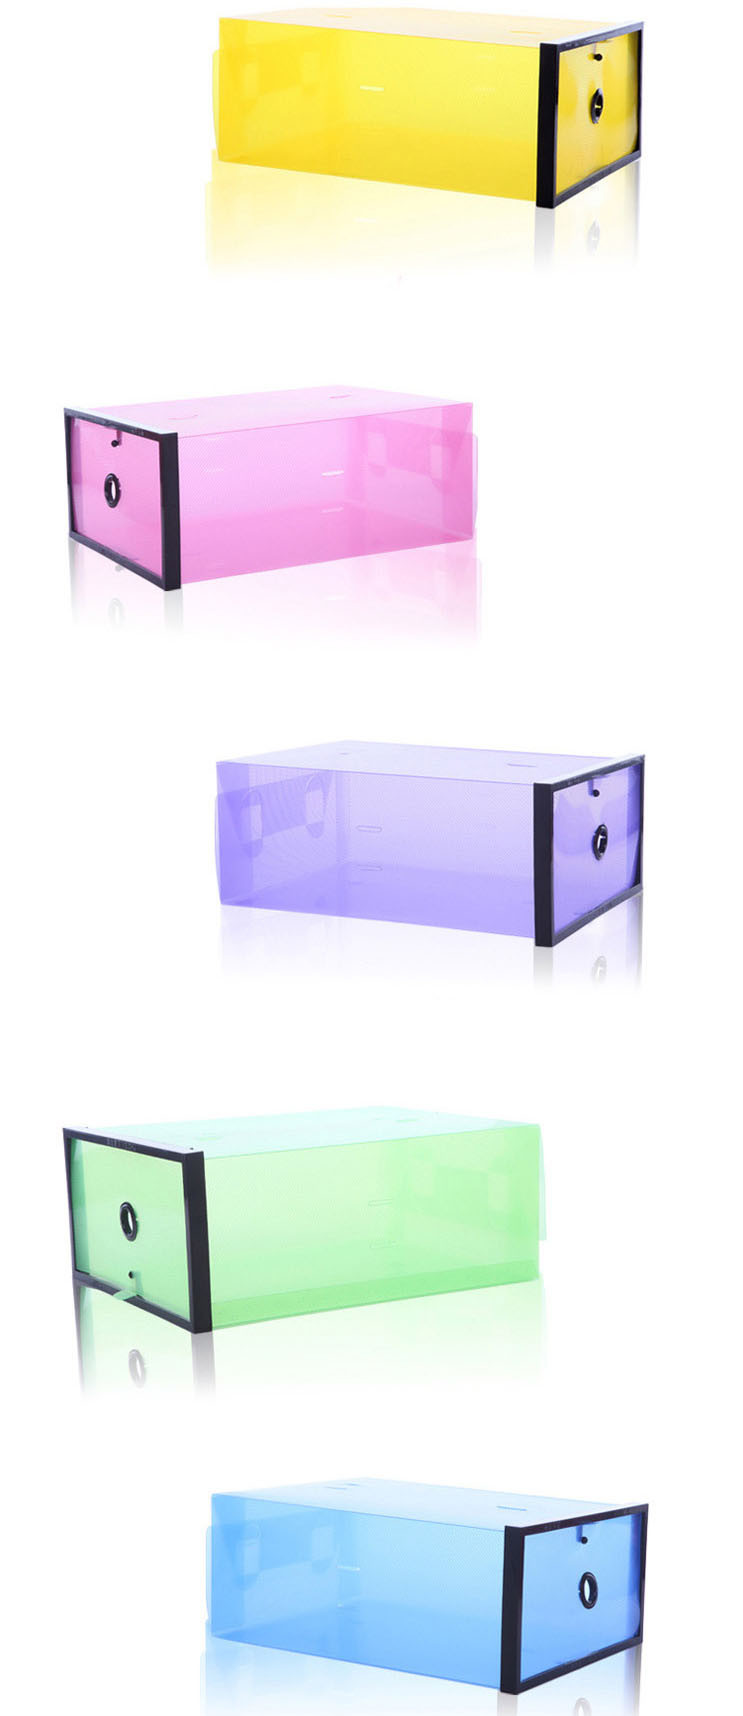 3个装鞋柜式透明女款鞋盒 塑料水晶收纳盒放鞋子的收纳盒透明鞋盒组合鞋收纳箱鞋盒子塑料整理箱 颜色随机